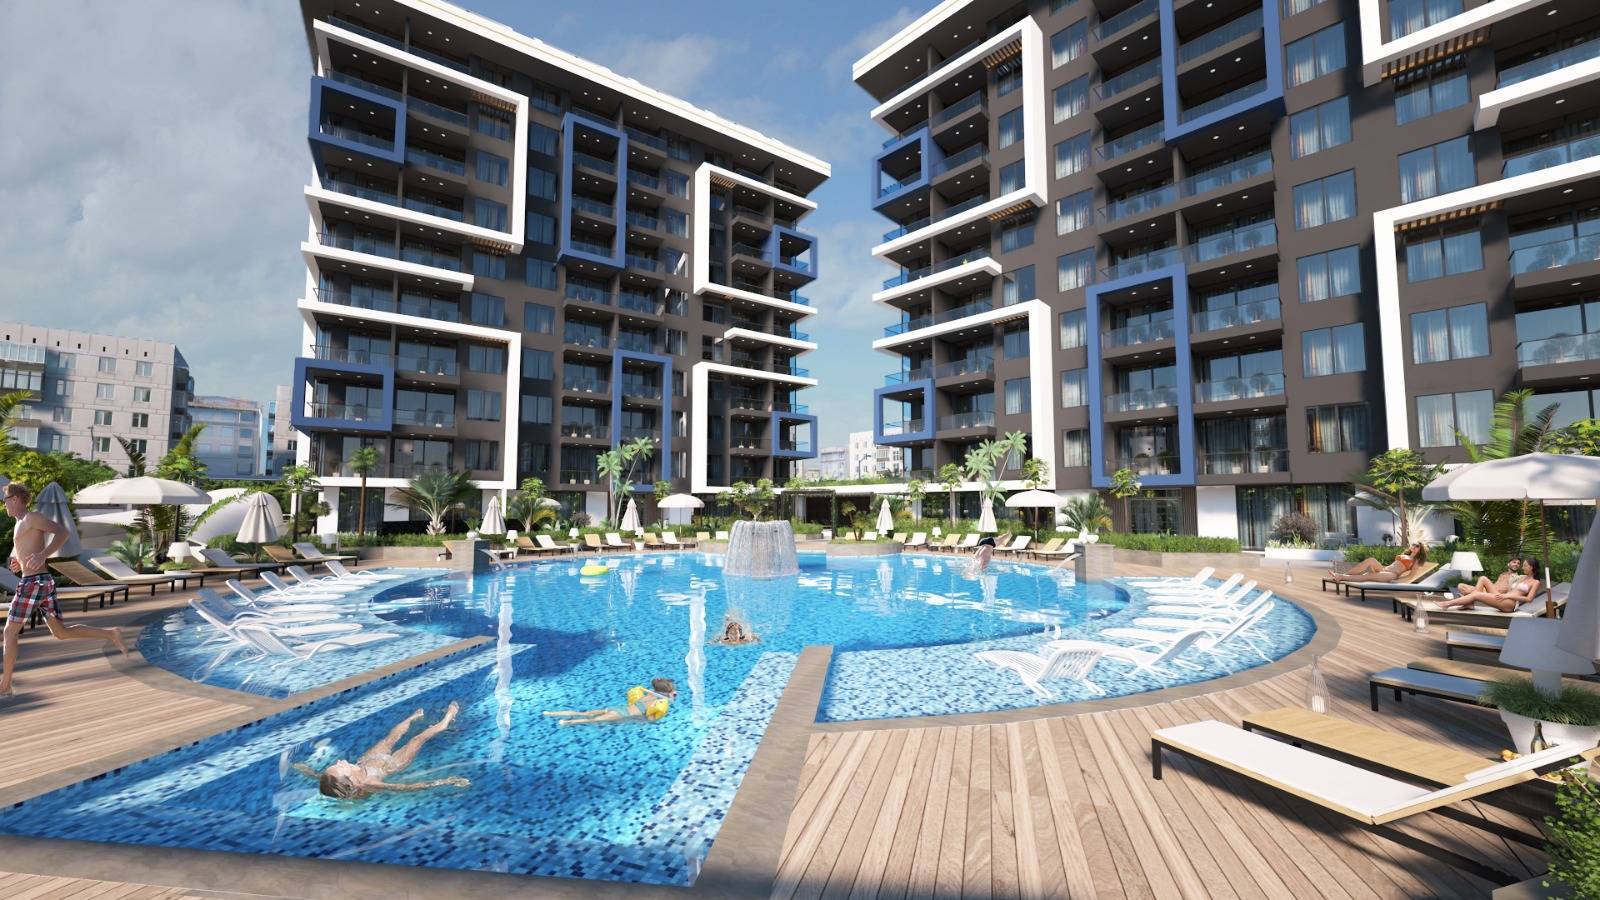 Nové byty na prodej v Turecku - centrum města Alanya